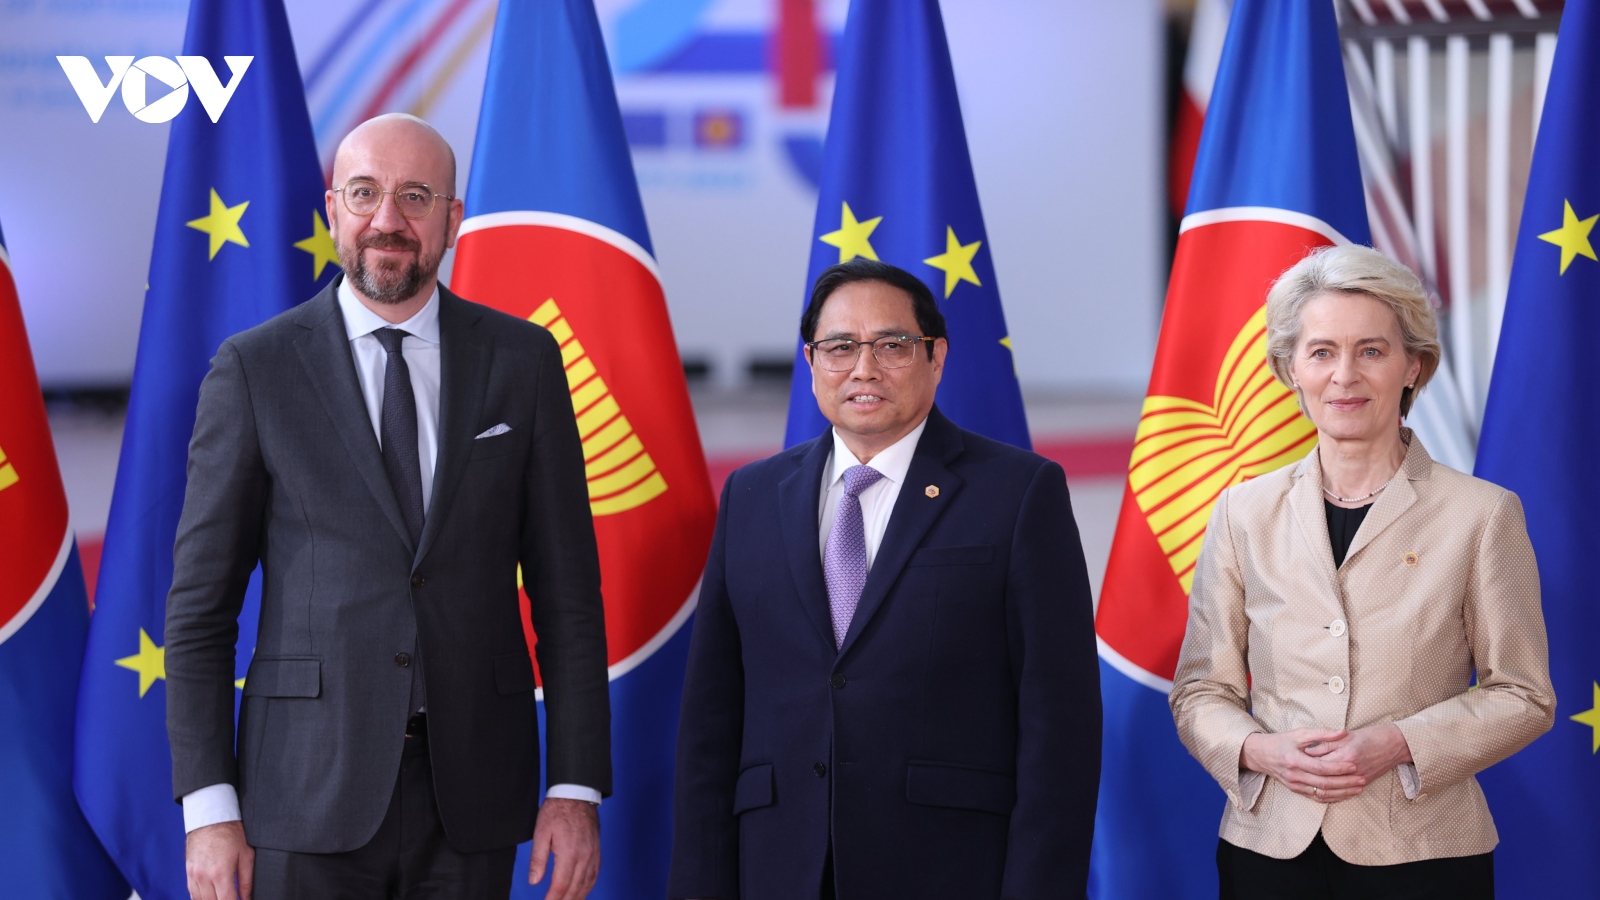 Thủ tướng đề nghị ASEAN và EU lấy hoà bình là mục đích, coi đối thoại là công cụ